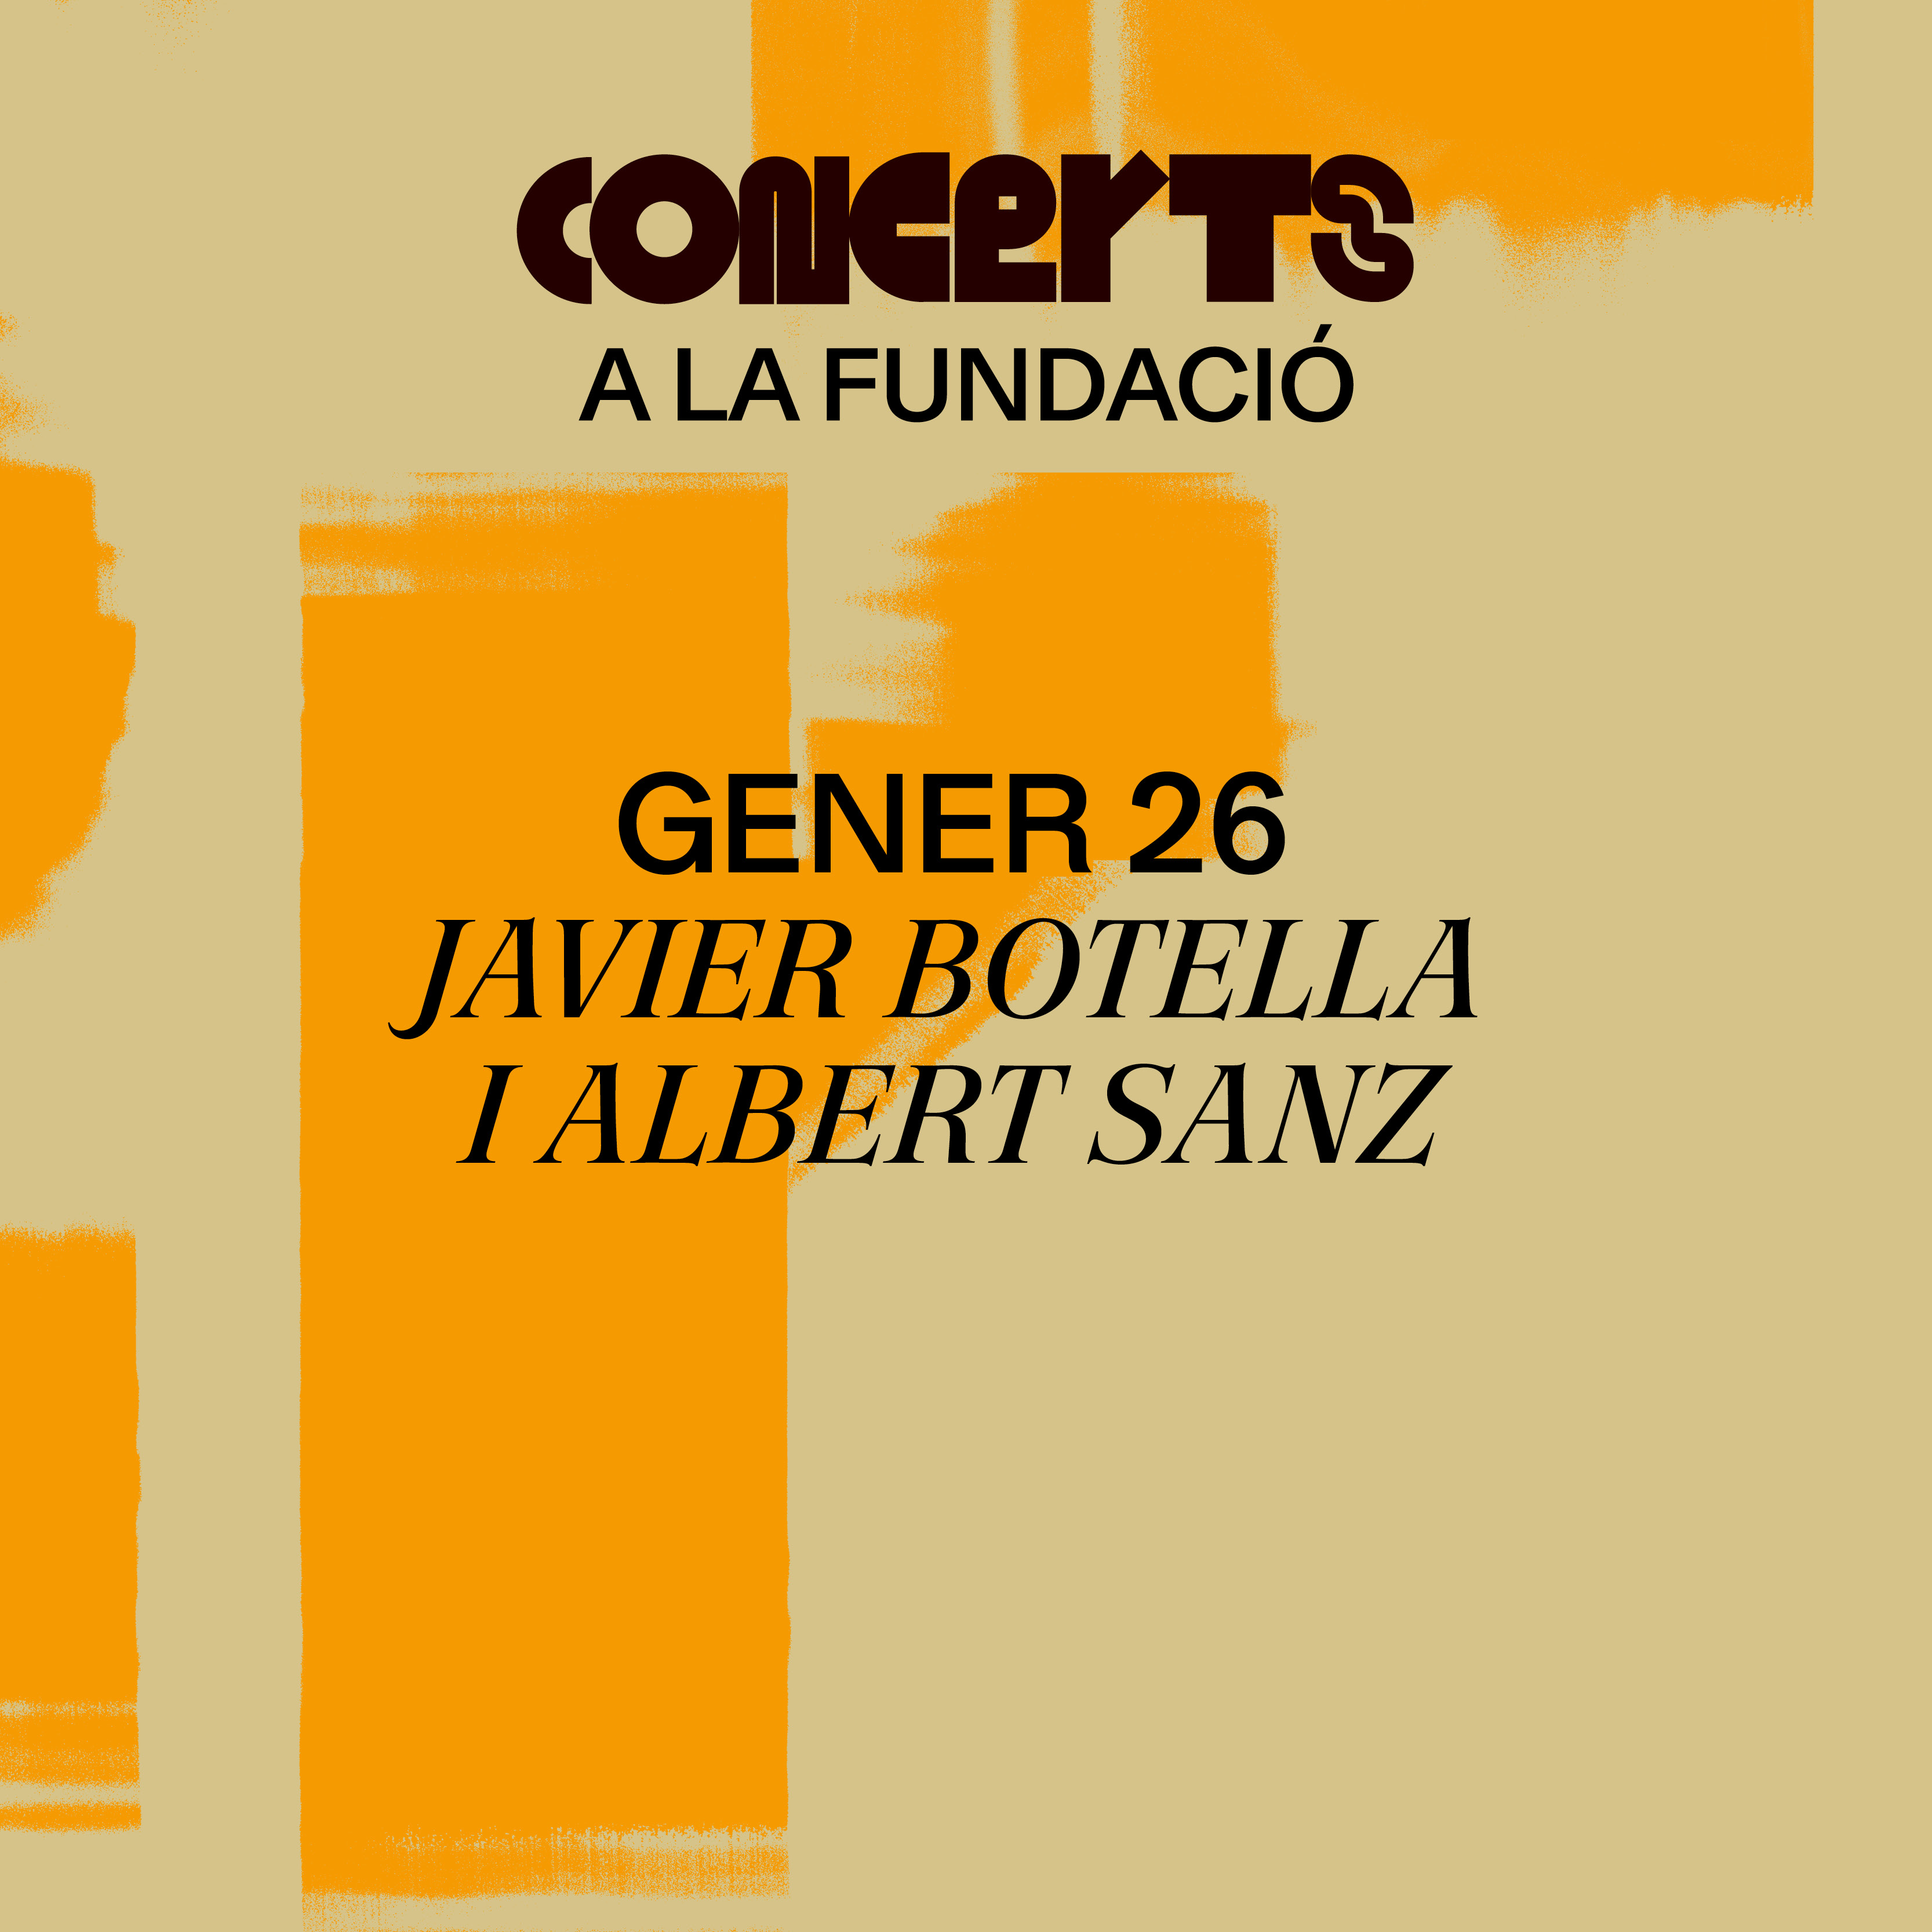 Concierto de jazz. Javier Botella y Albert Sanz